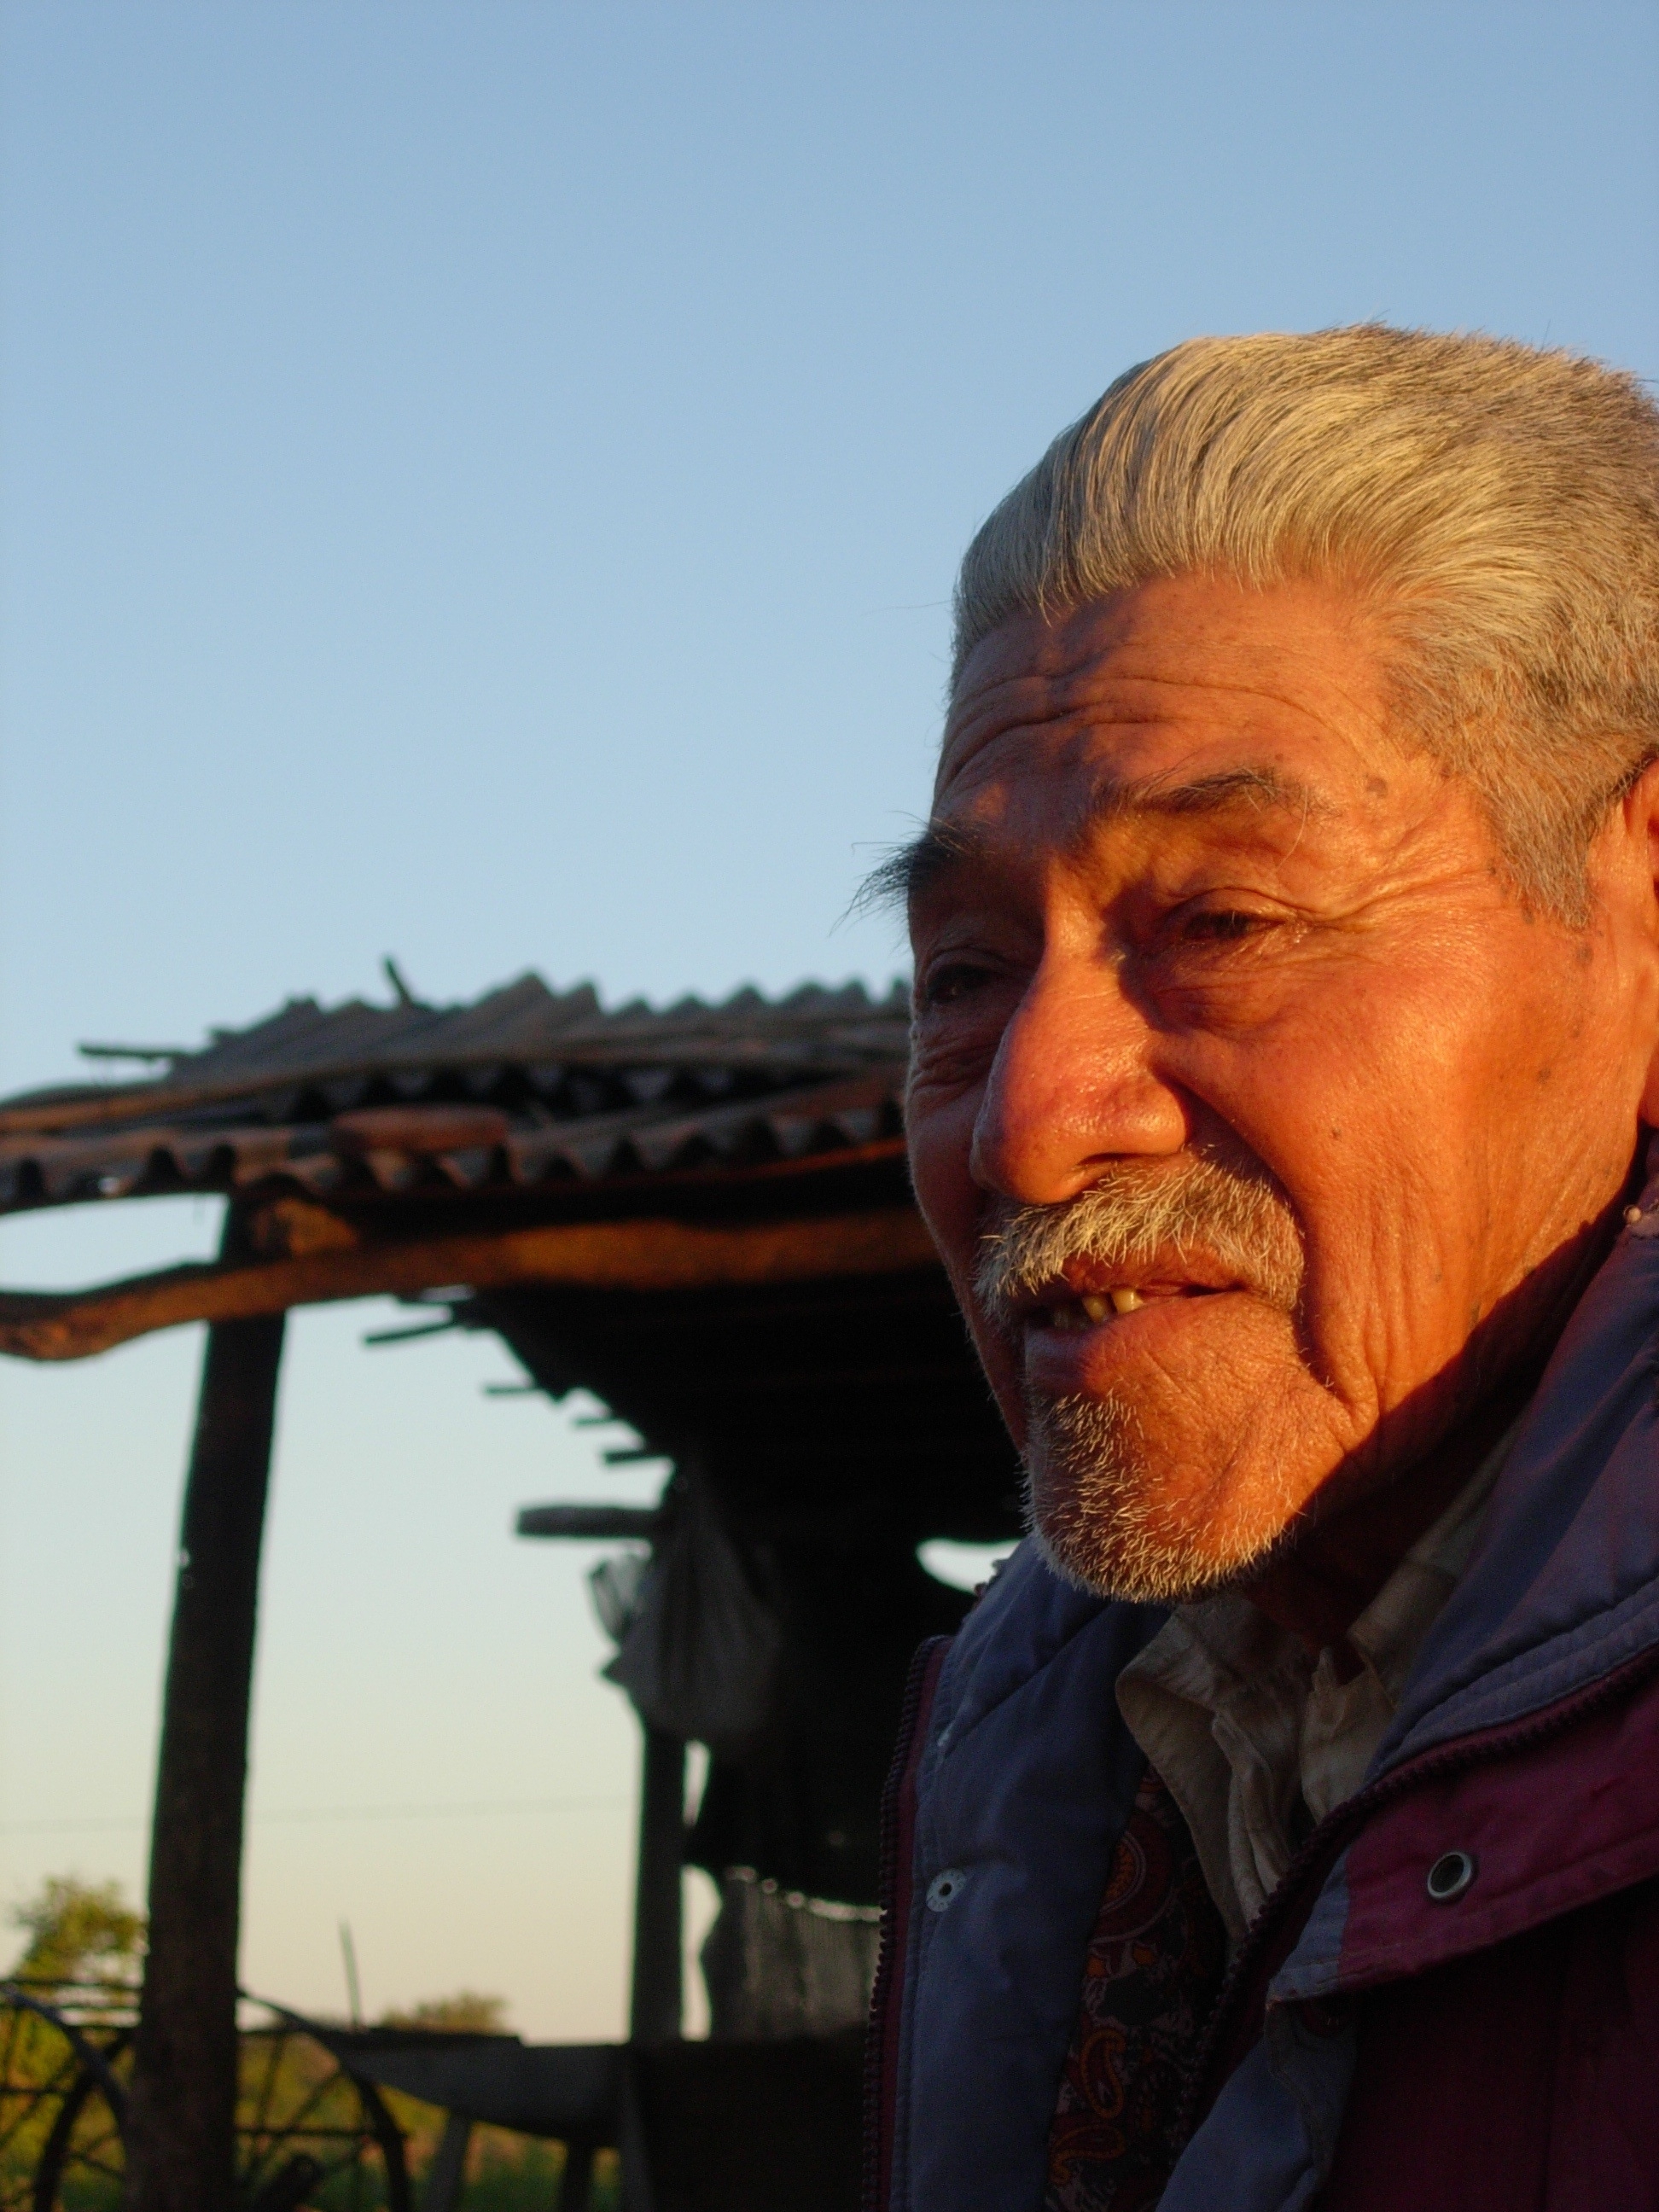 Indigene Menschen werden in vielen Gesellschaften ausgeschlossen: Indios im Gran Chaco in Argentinien.